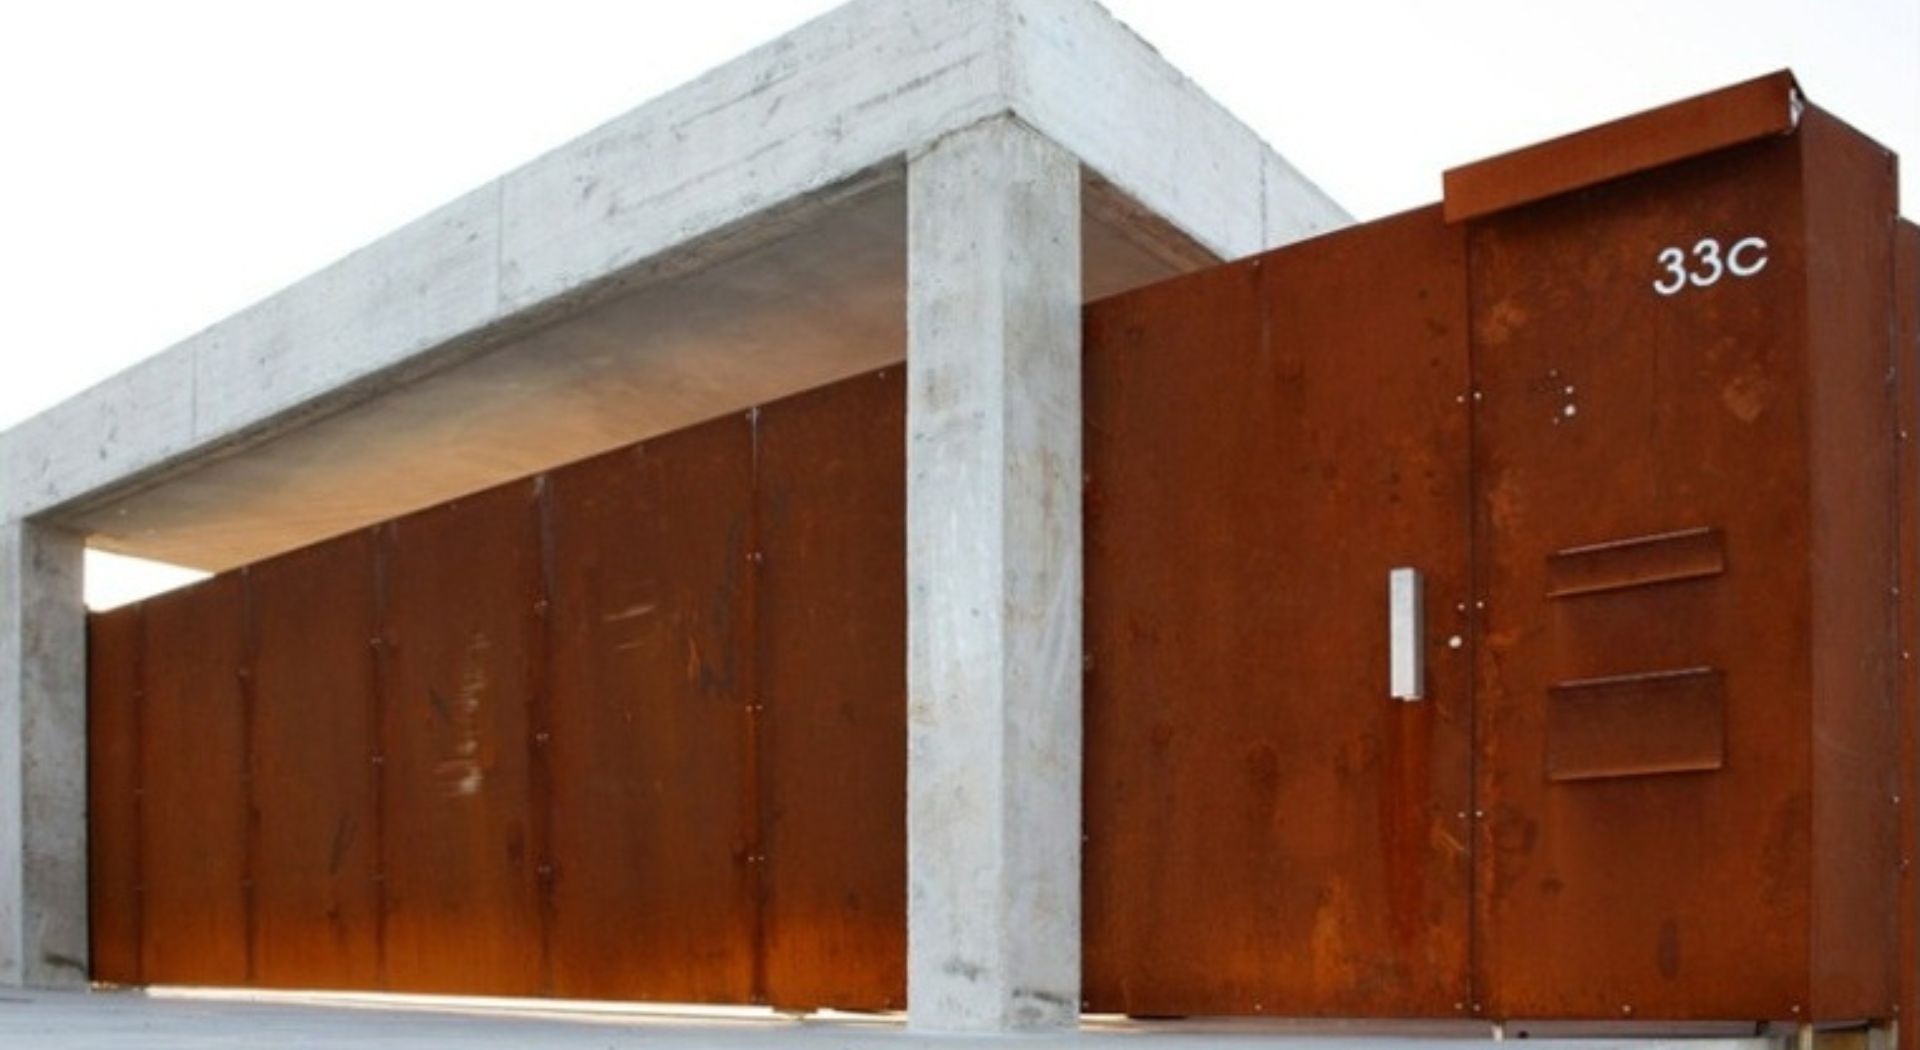 Arquitecto Villagarcía de Arousa vista portal exterior efecto oxidado